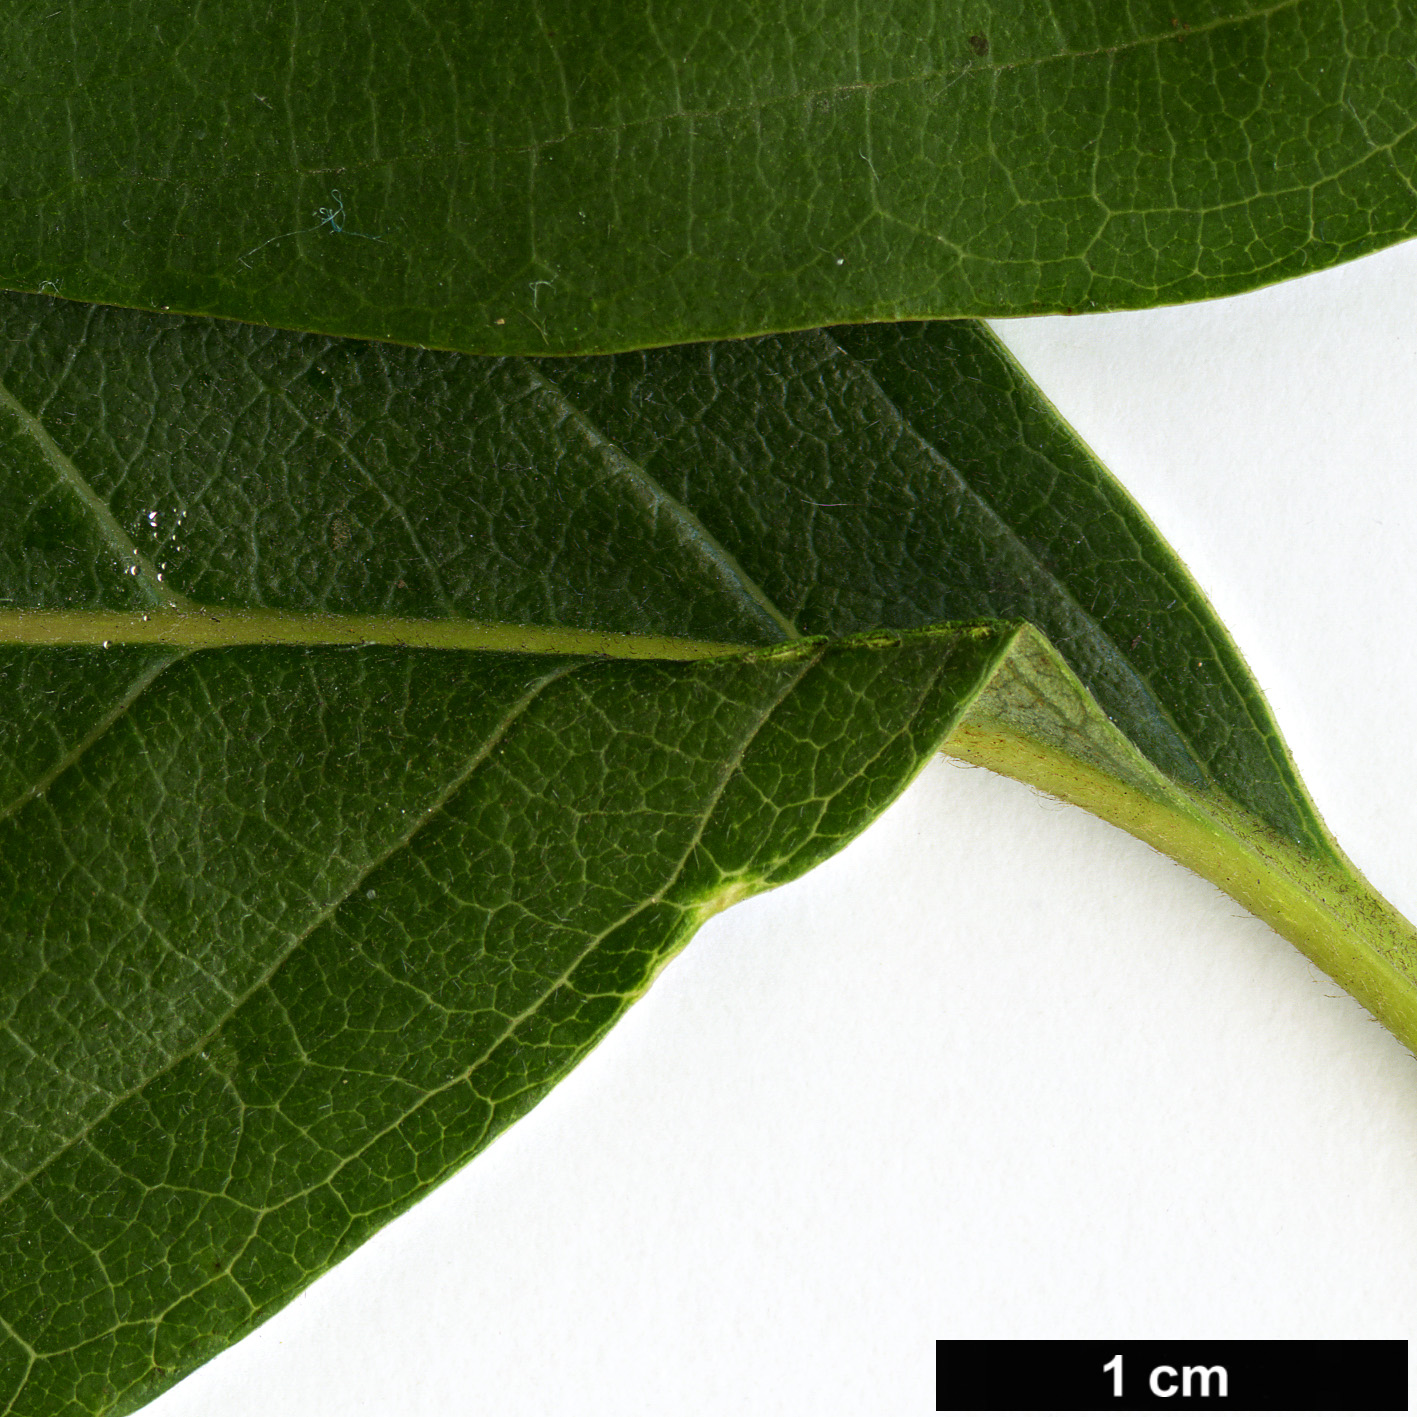 High resolution image: Family: Nyssaceae - Genus: Nyssa - Taxon: sylvatica